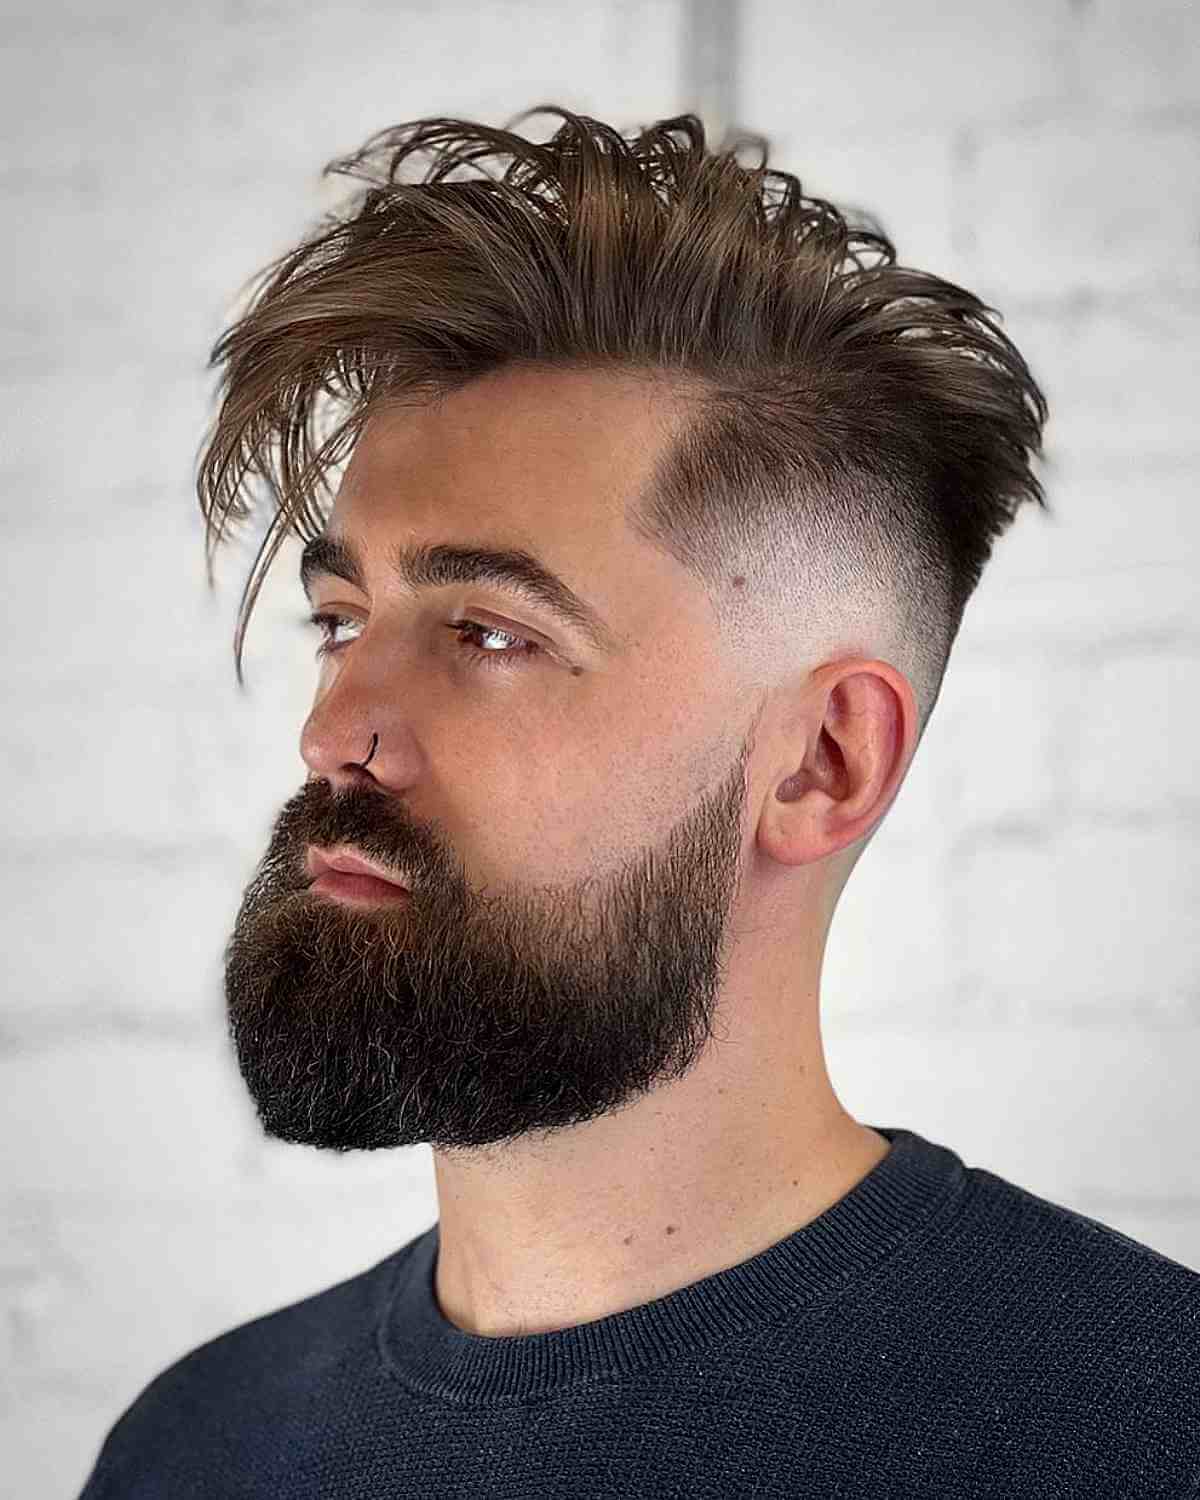 Langes unordentliches Top mit verblasstem Bart für Männer